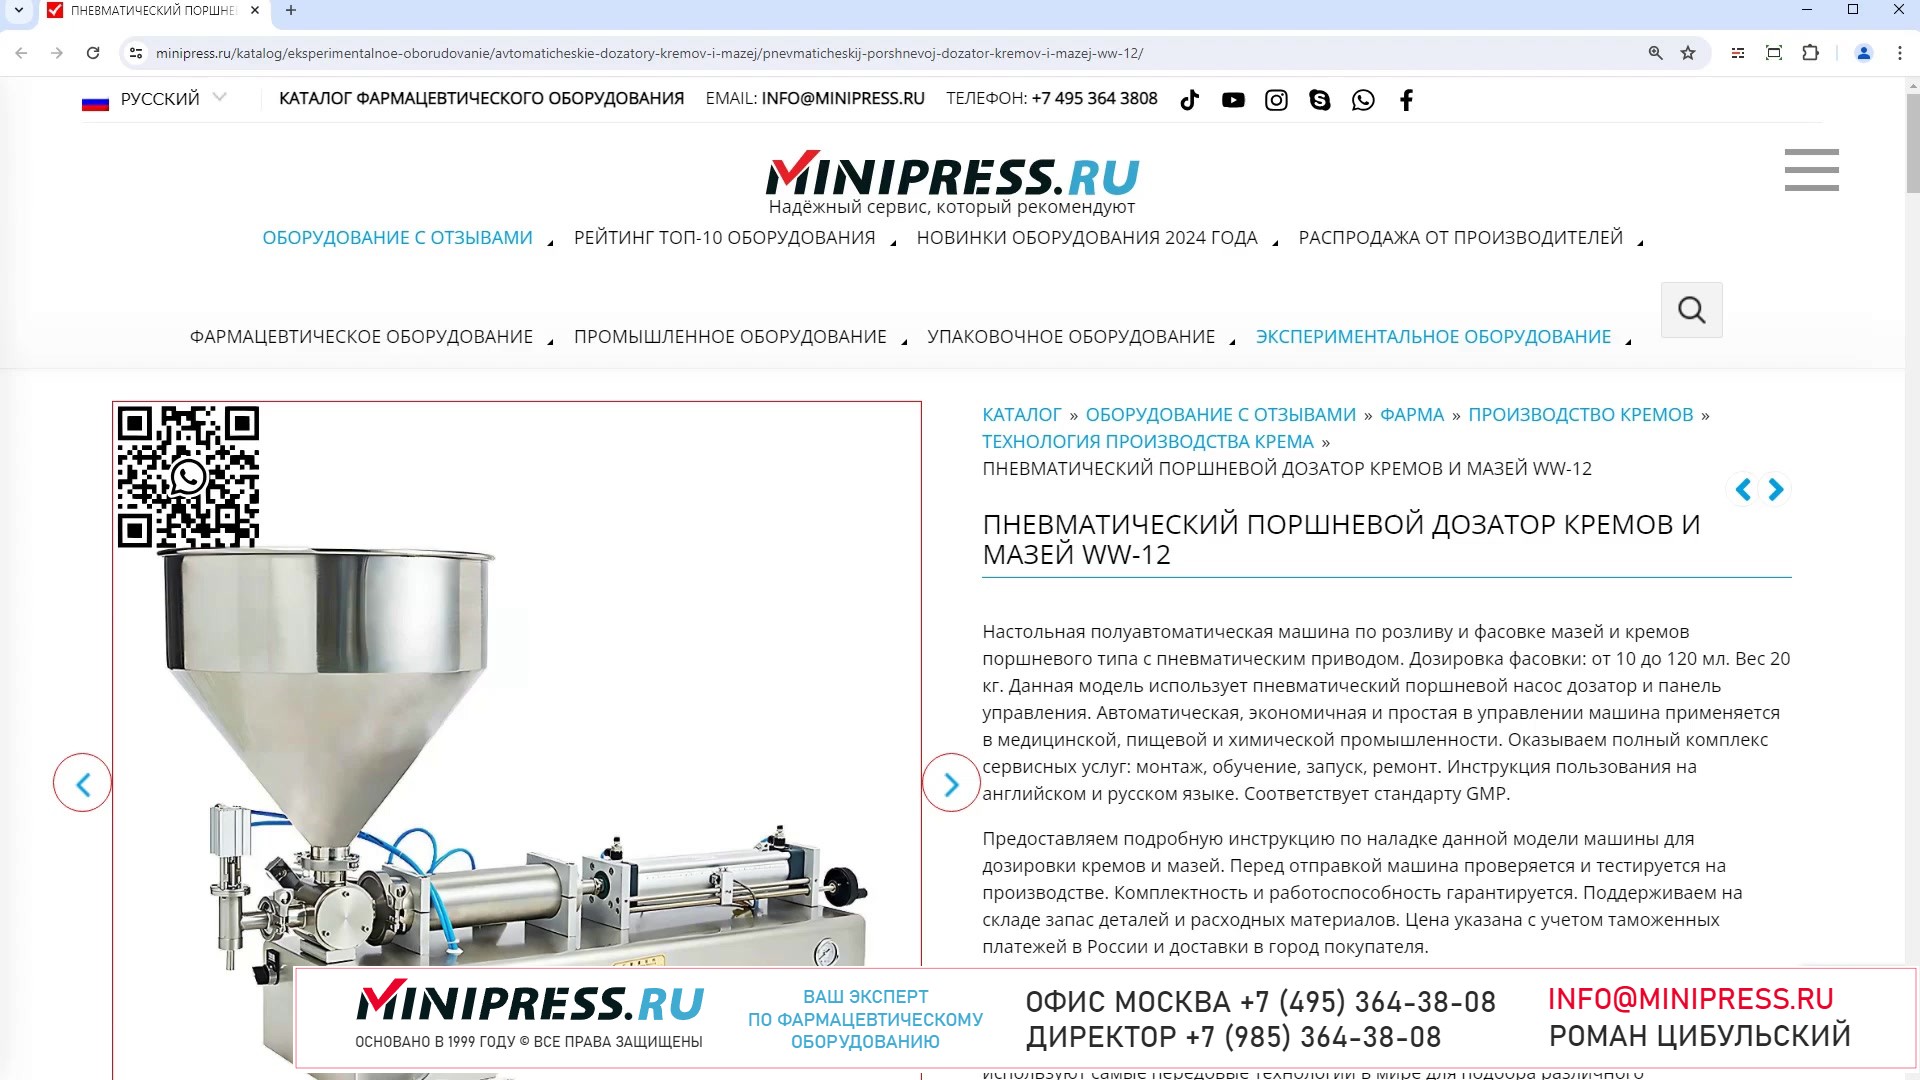 Minipress.ru Пневматический поршневой дозатор кремов и мазей WW-12